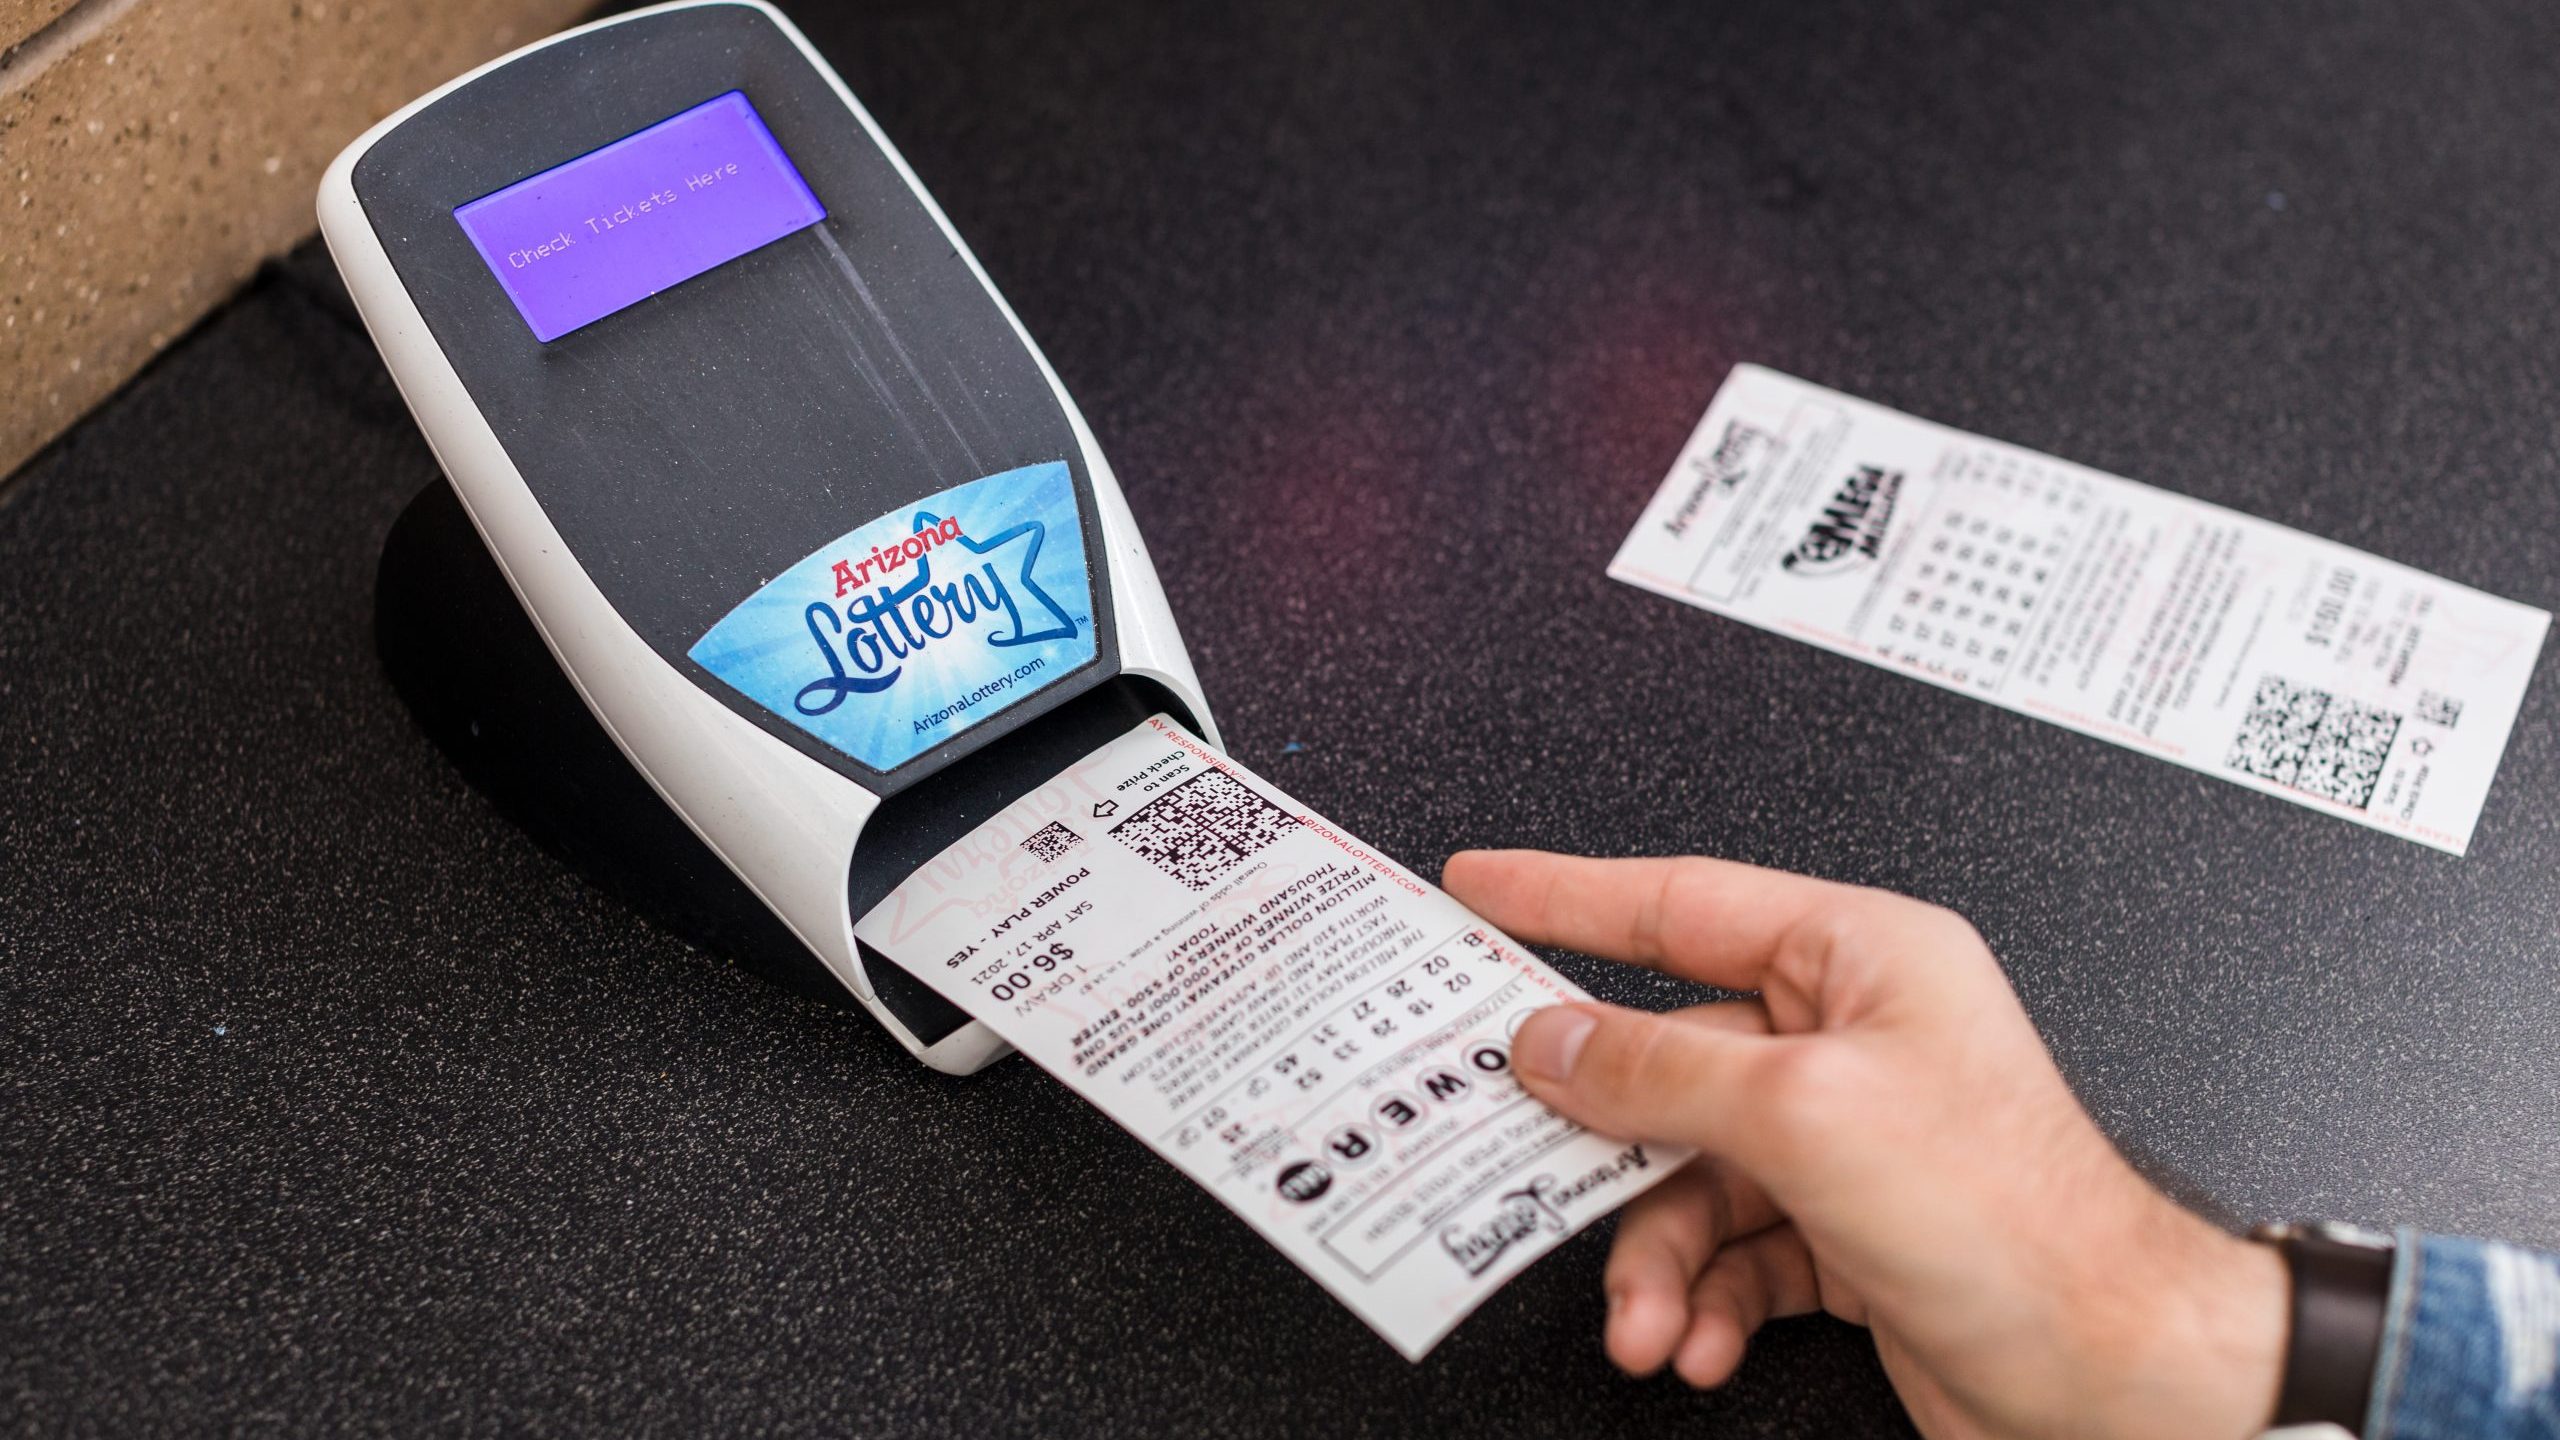 scan az lottery ticket